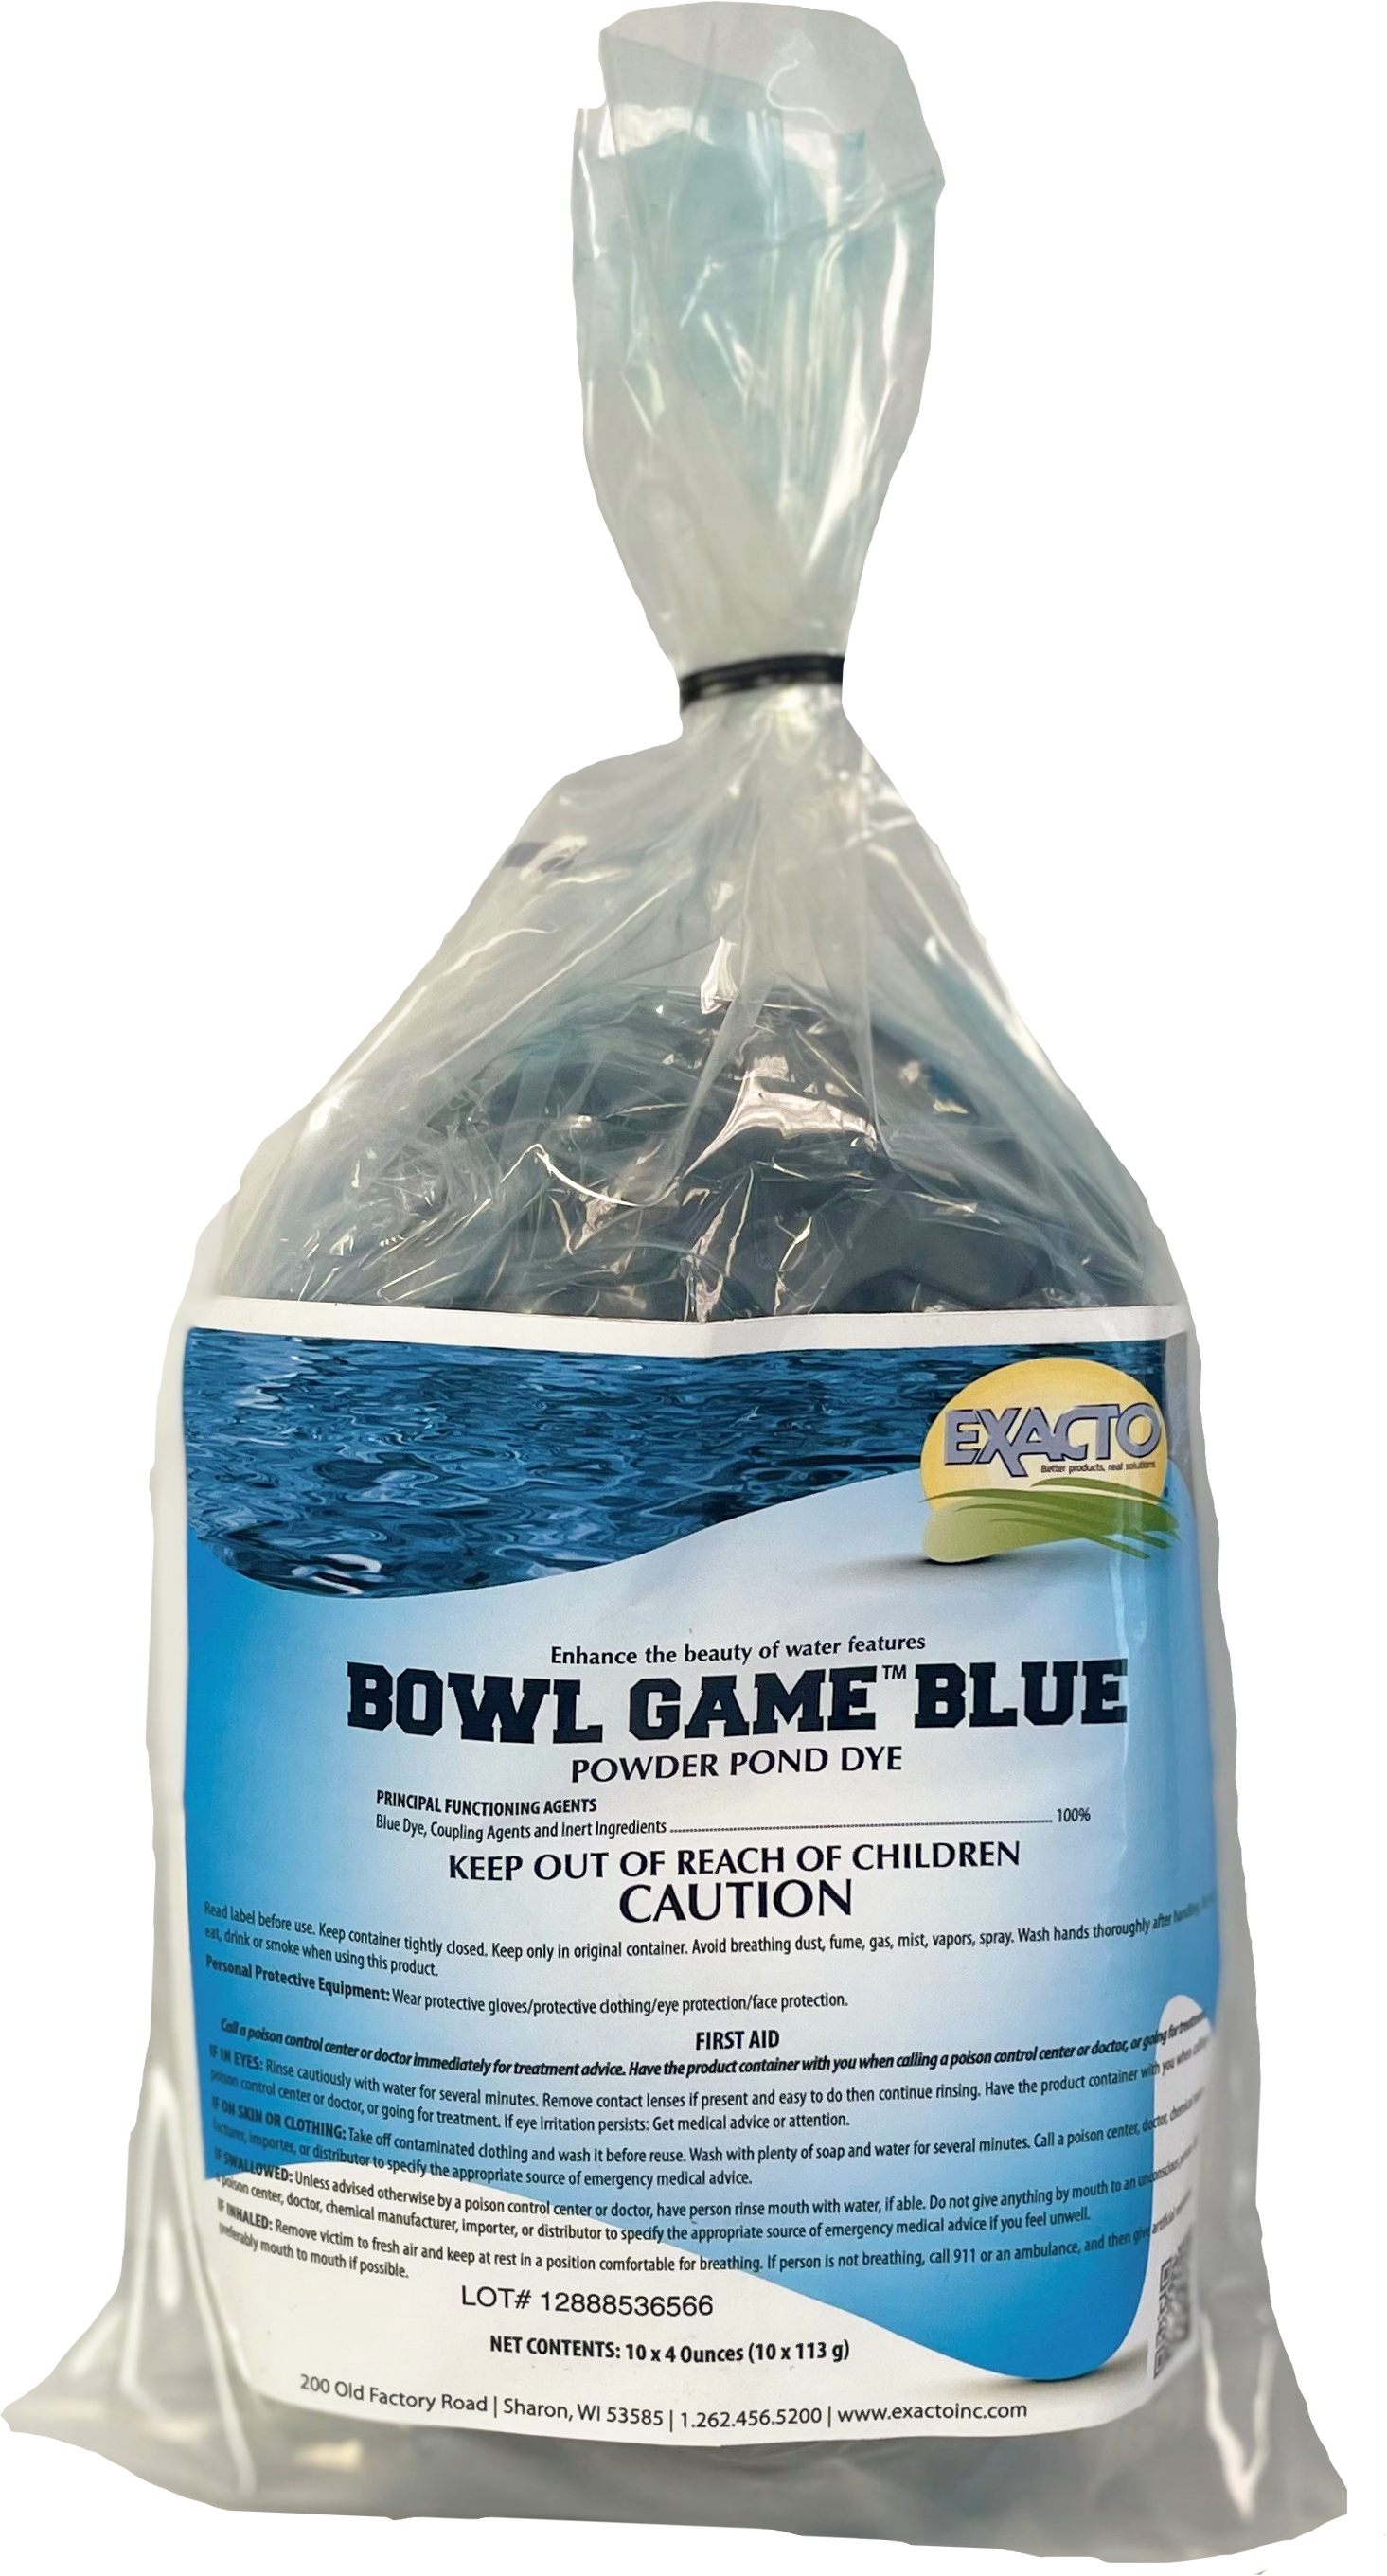 Bowl Game Pond Dye Blue 10 x 4oz bags - 4 bags per case